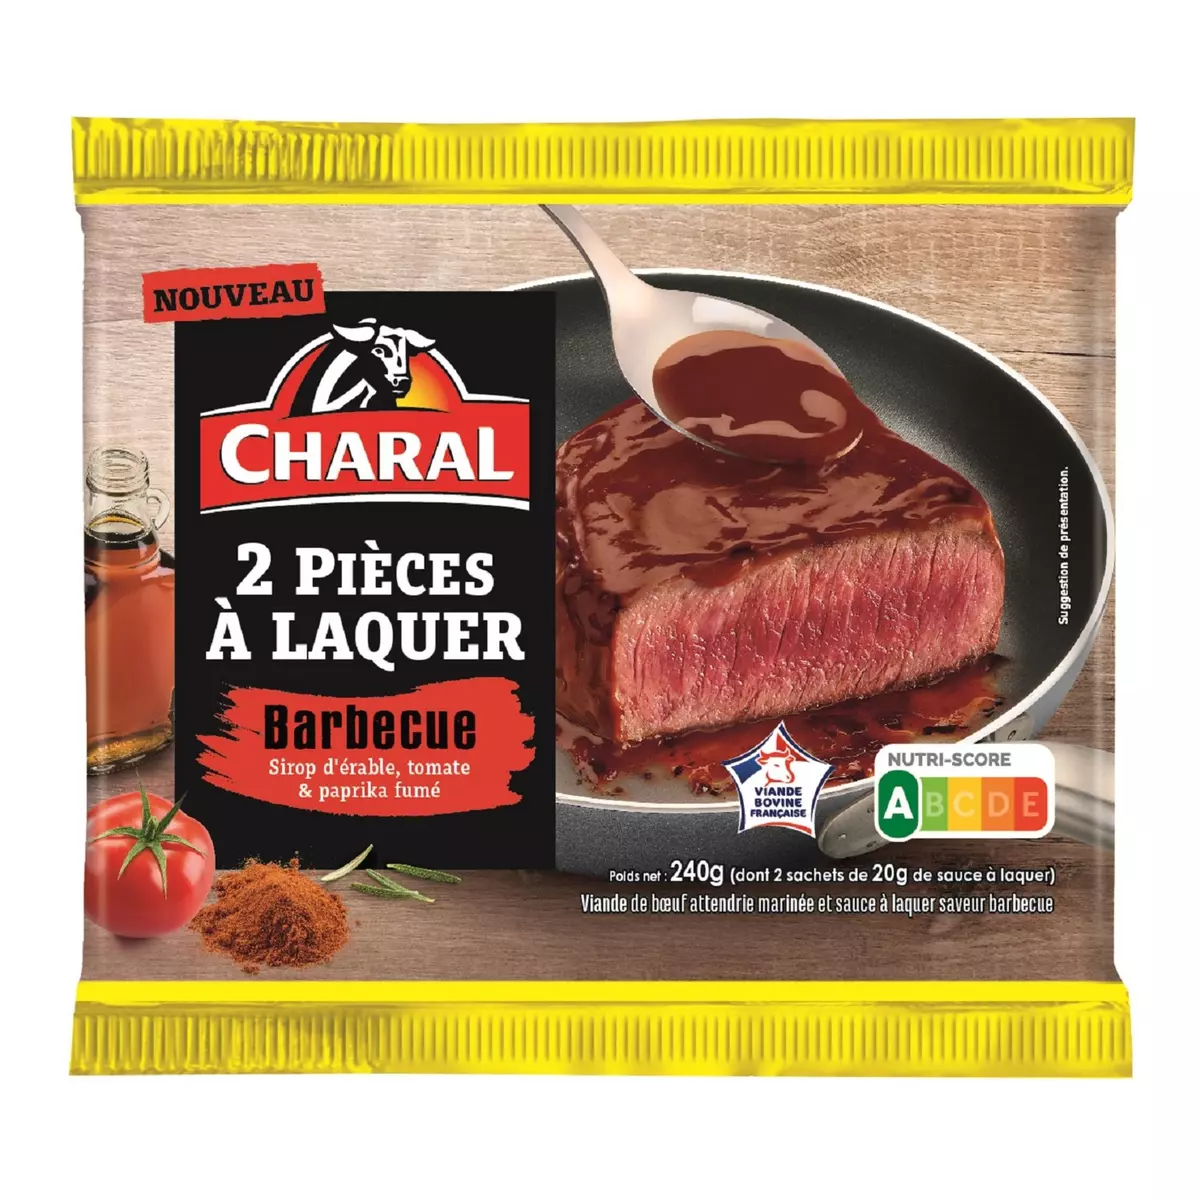 CHARAL Pièces à laquer sauce barbecue 2x100g +40g de sauce